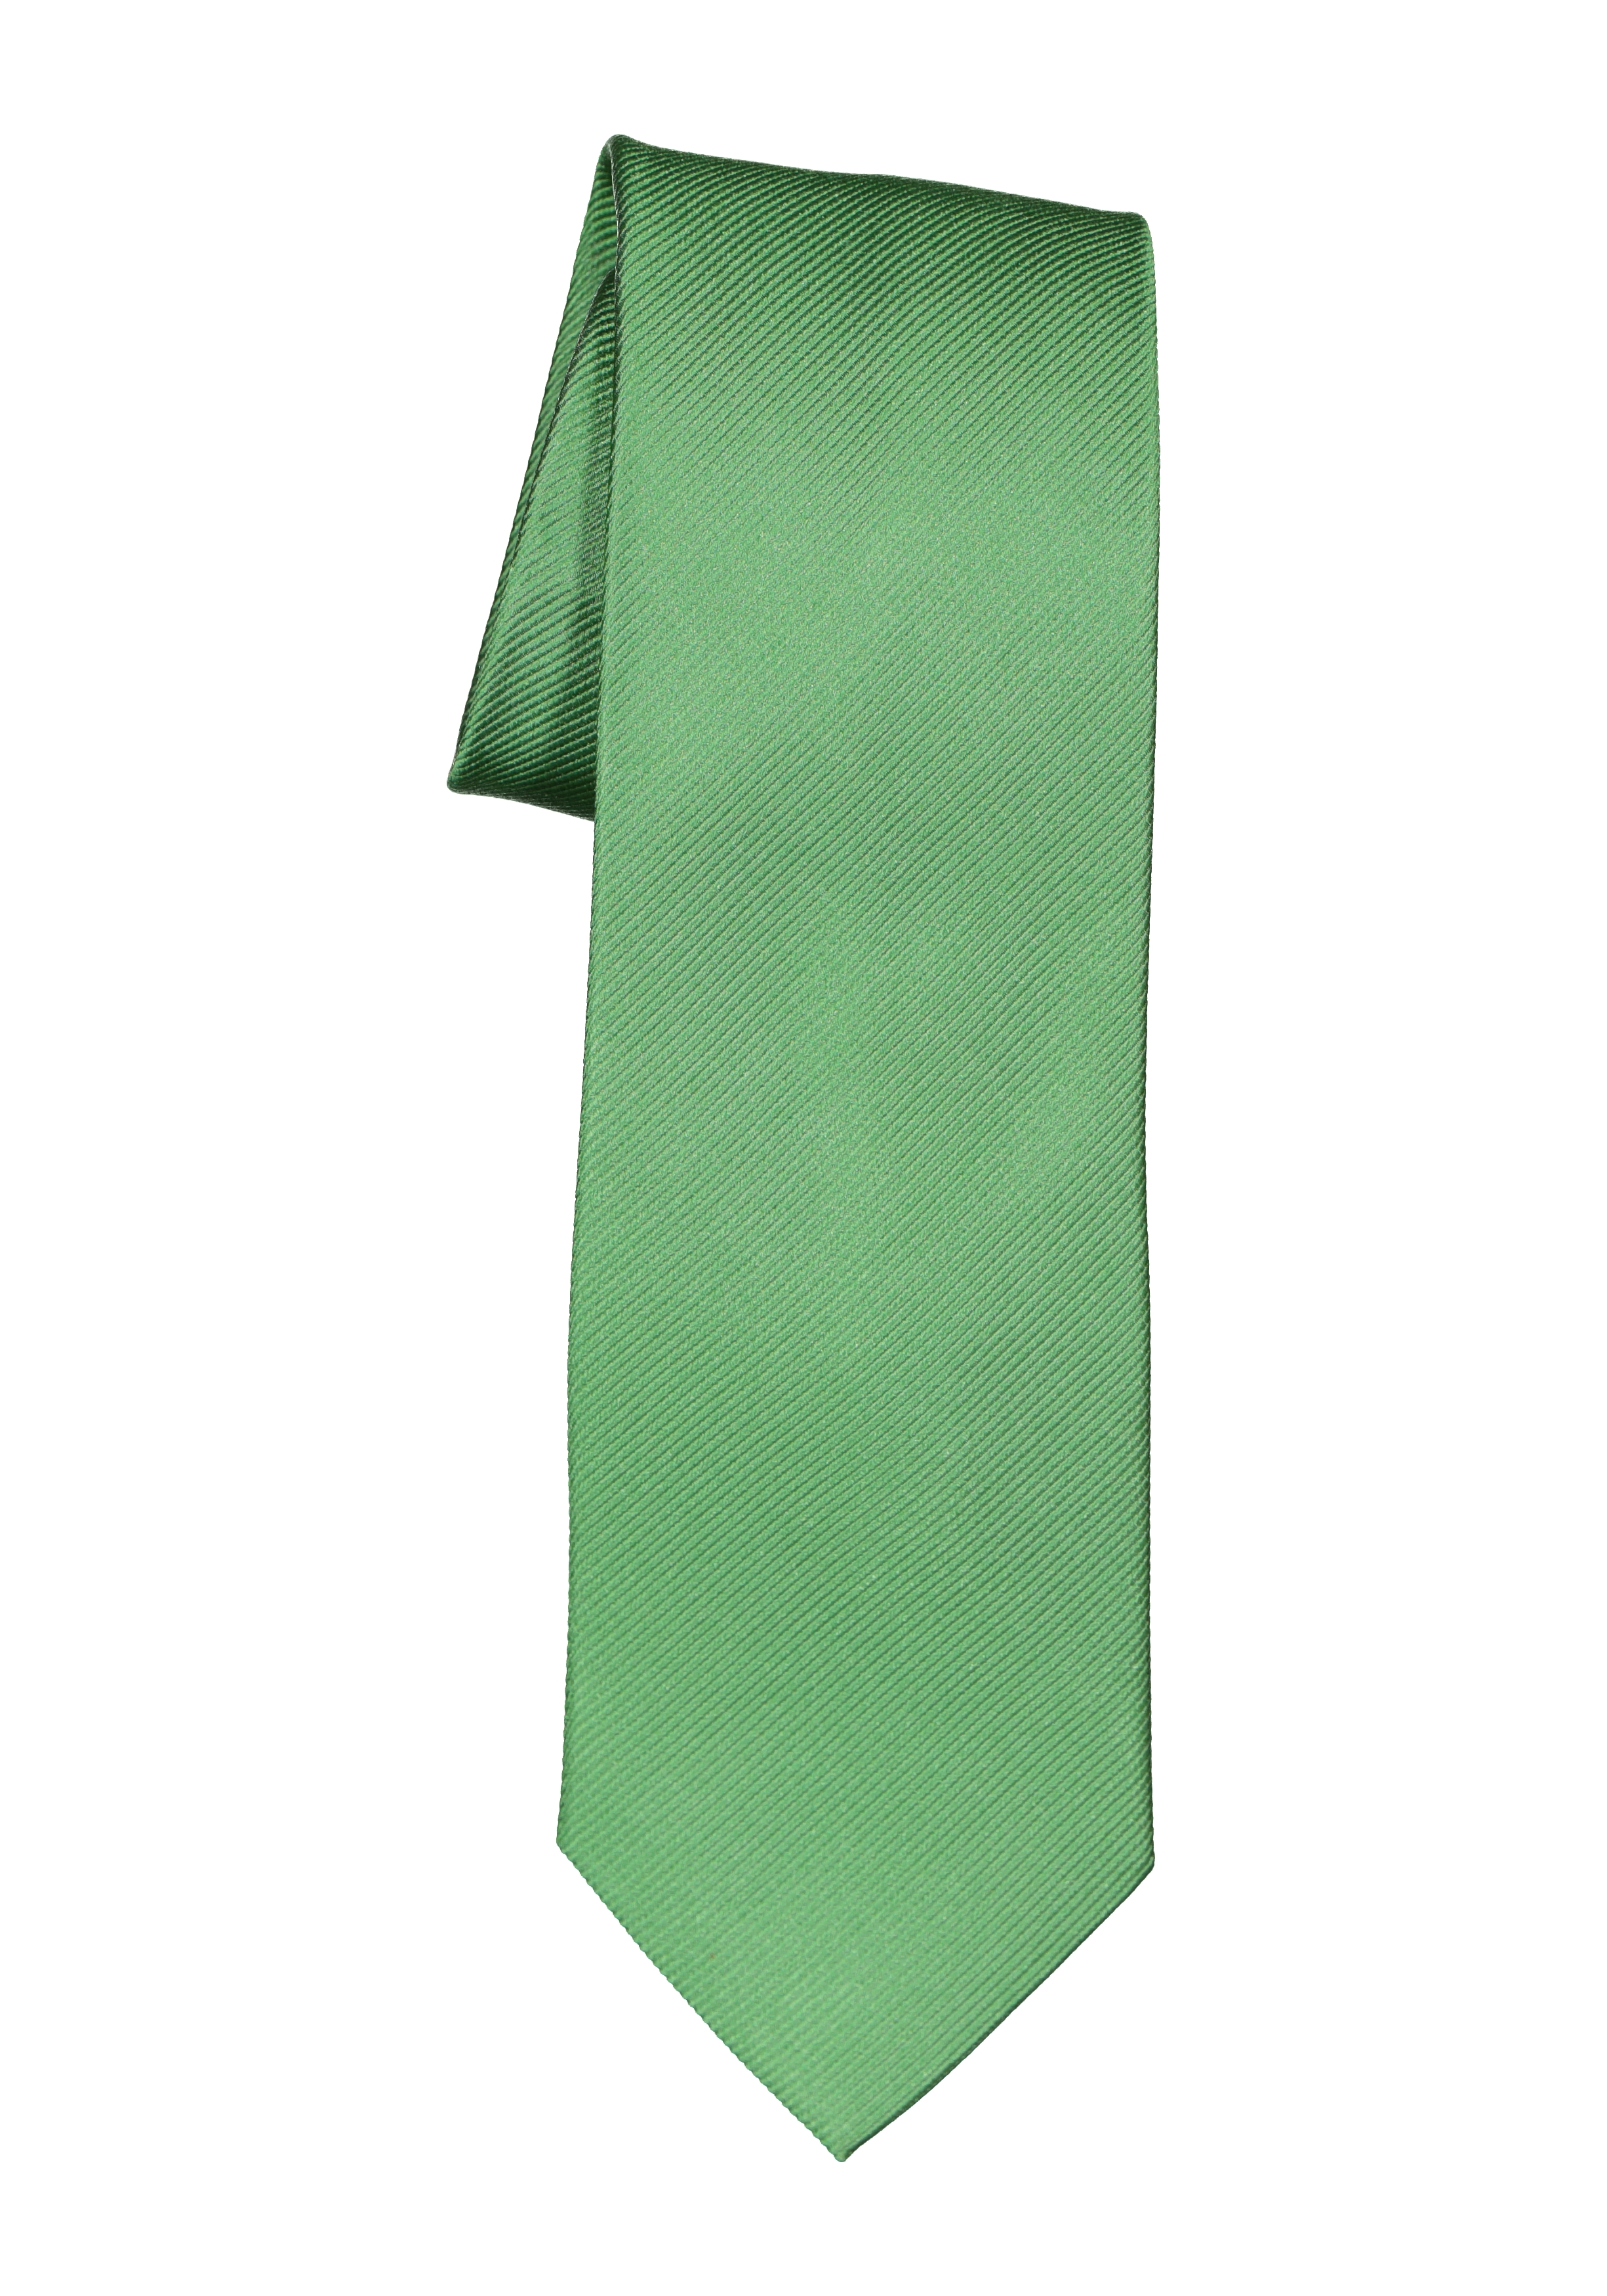 Leraar op school kalender Arabisch Michaelis stropdas, groen - Zomer SALE tot 50% korting